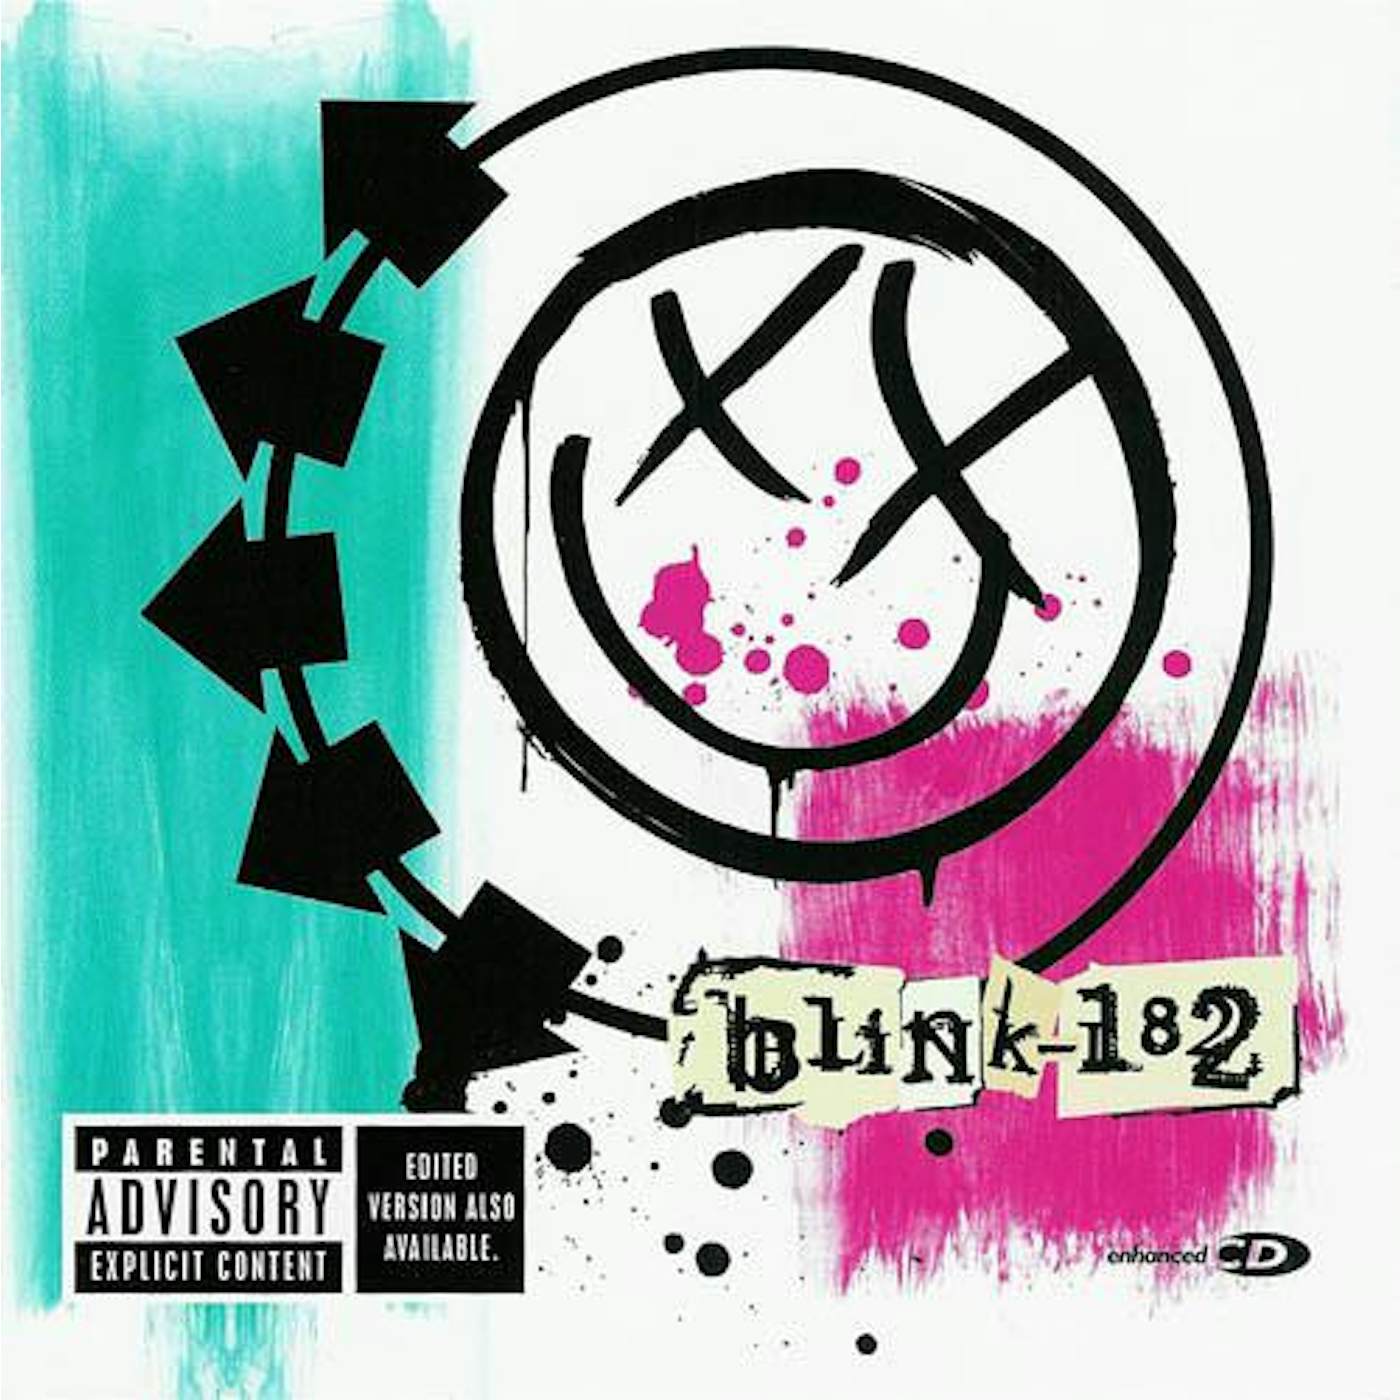 BLINK-182 CD